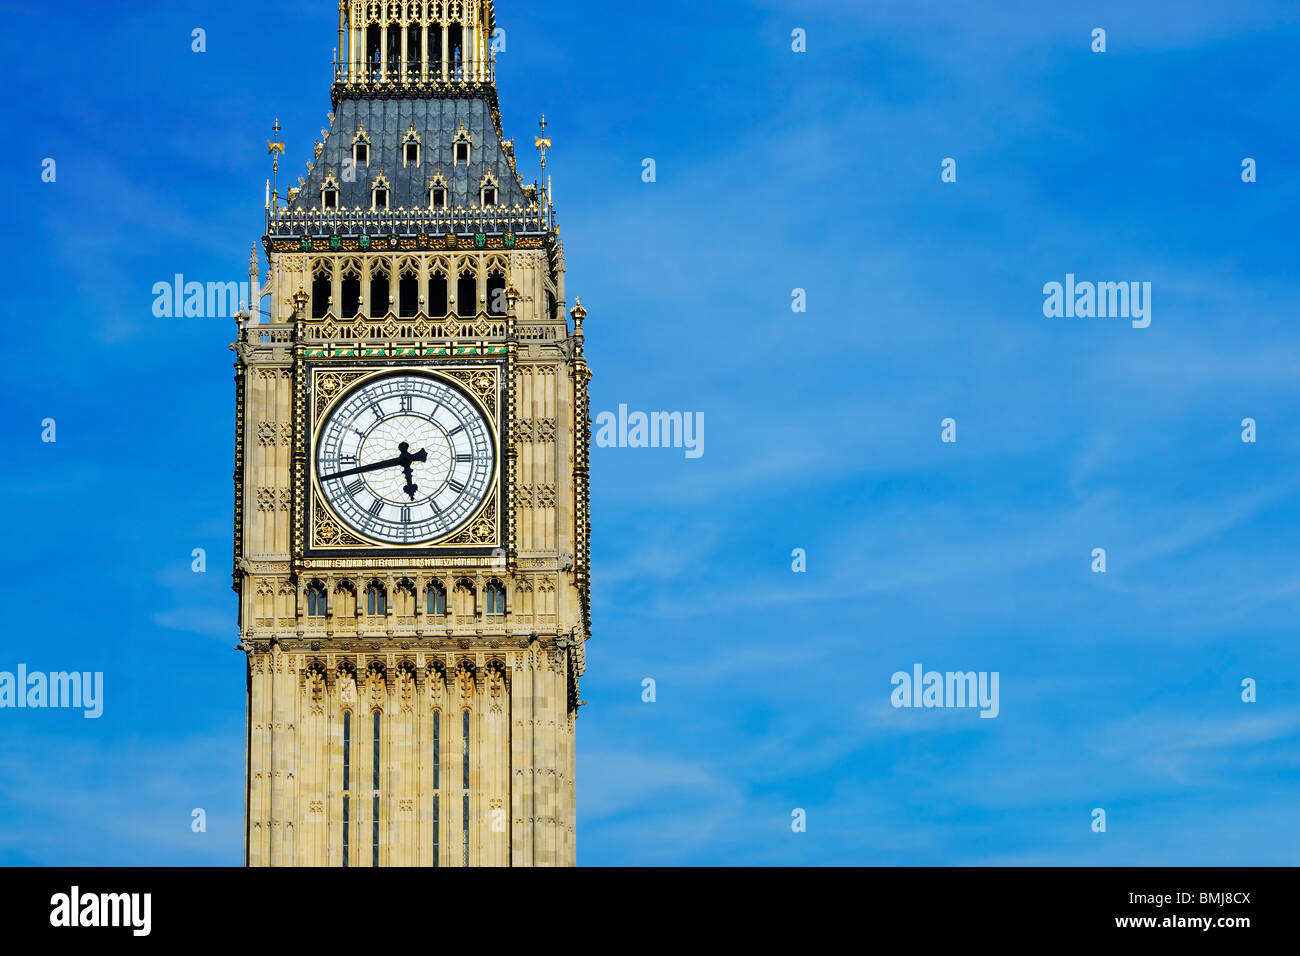 Big Ben clock tower, London UK, with blue sky Stock Photo